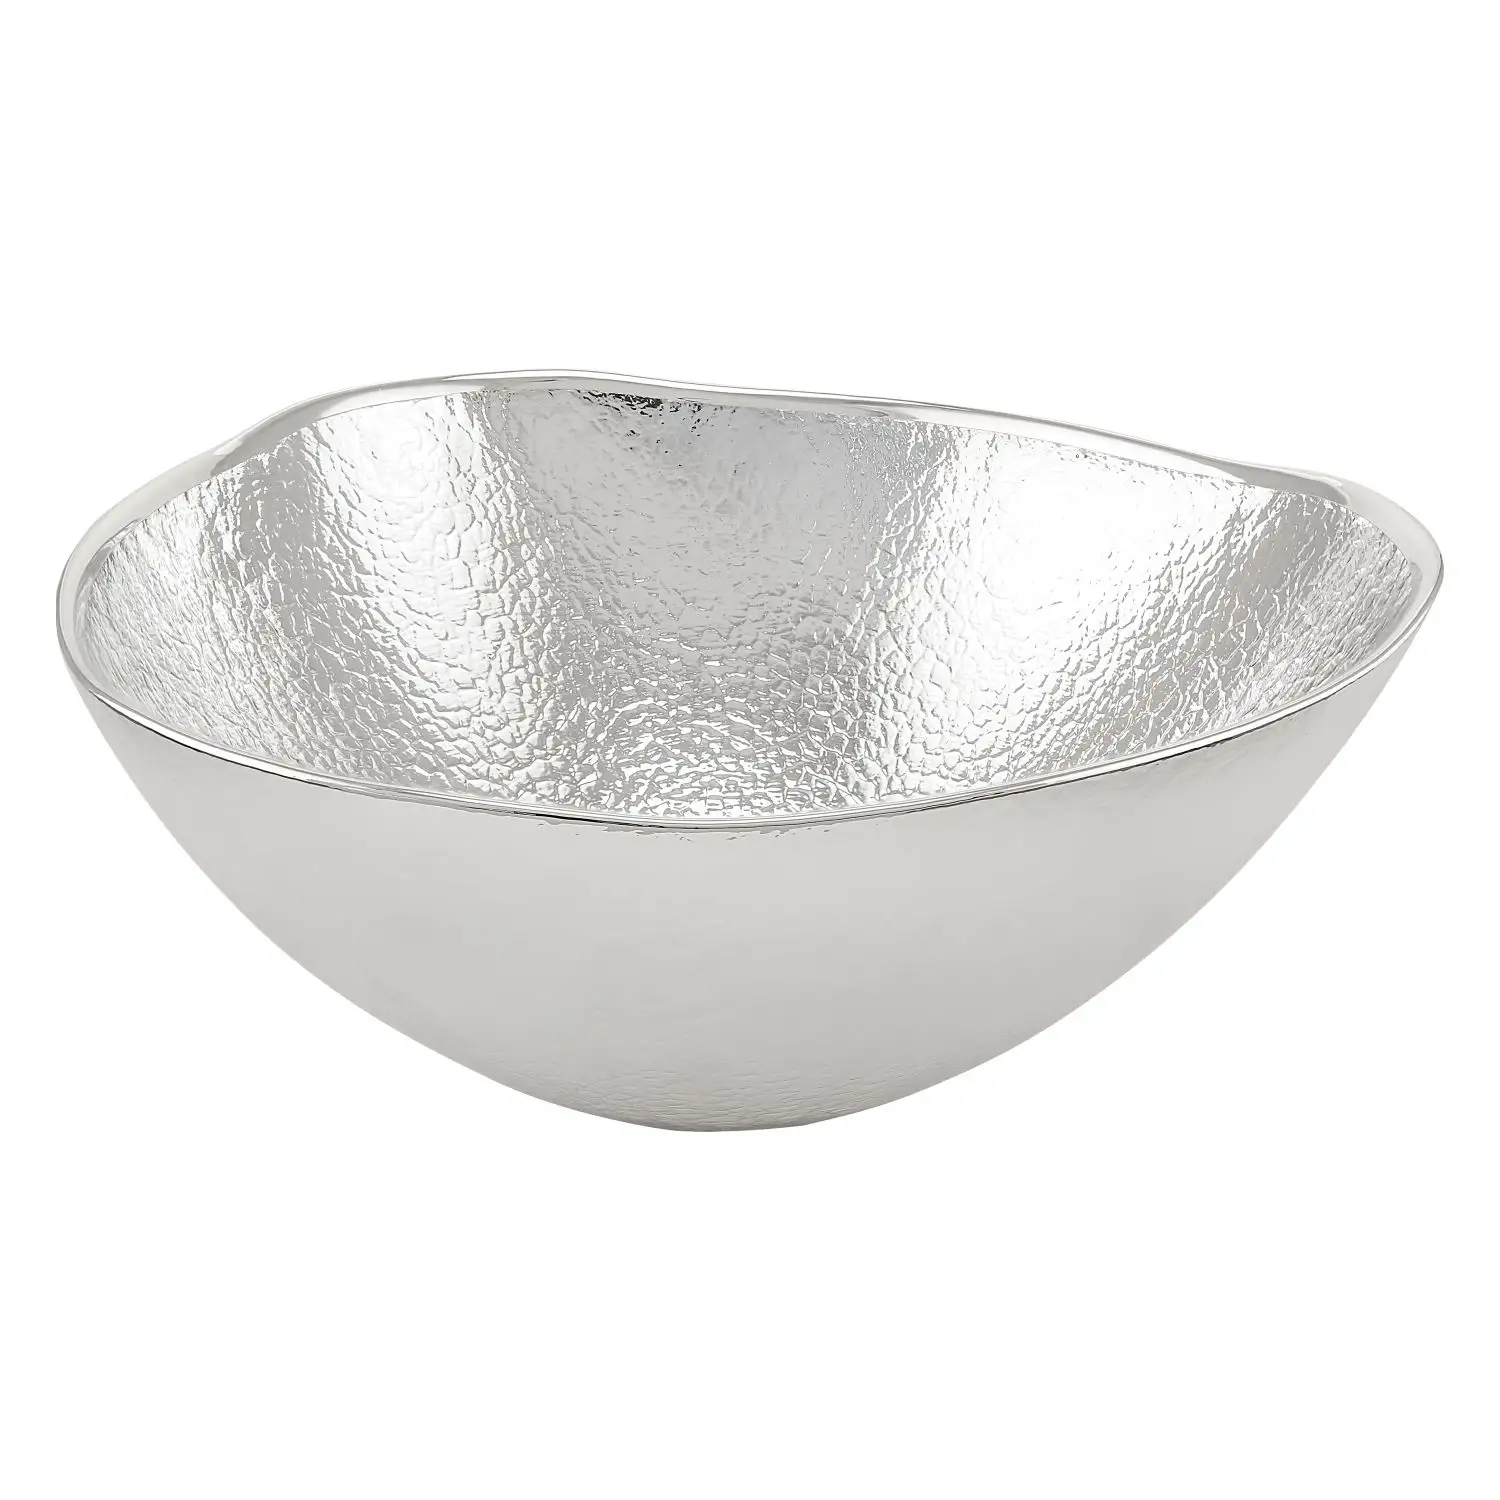 Чаша стеклянная UP (цвет серебрянный) диаметр 24 см, высота 10,5 см